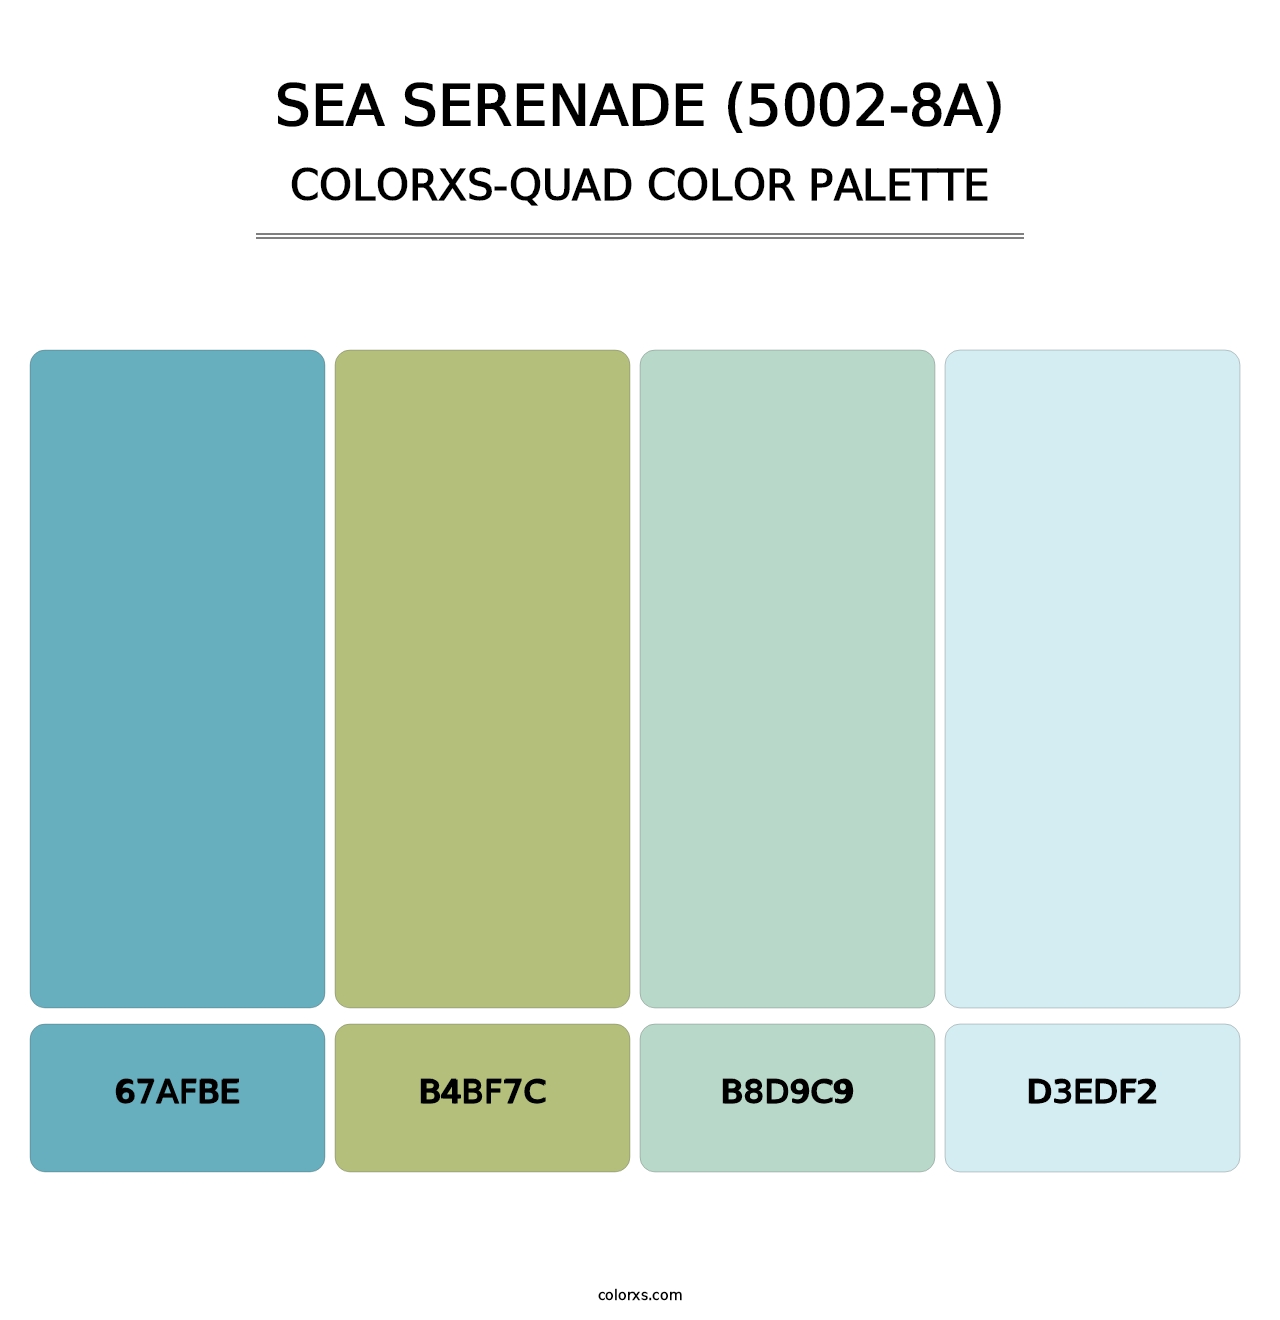 Sea Serenade (5002-8A) - Colorxs Quad Palette